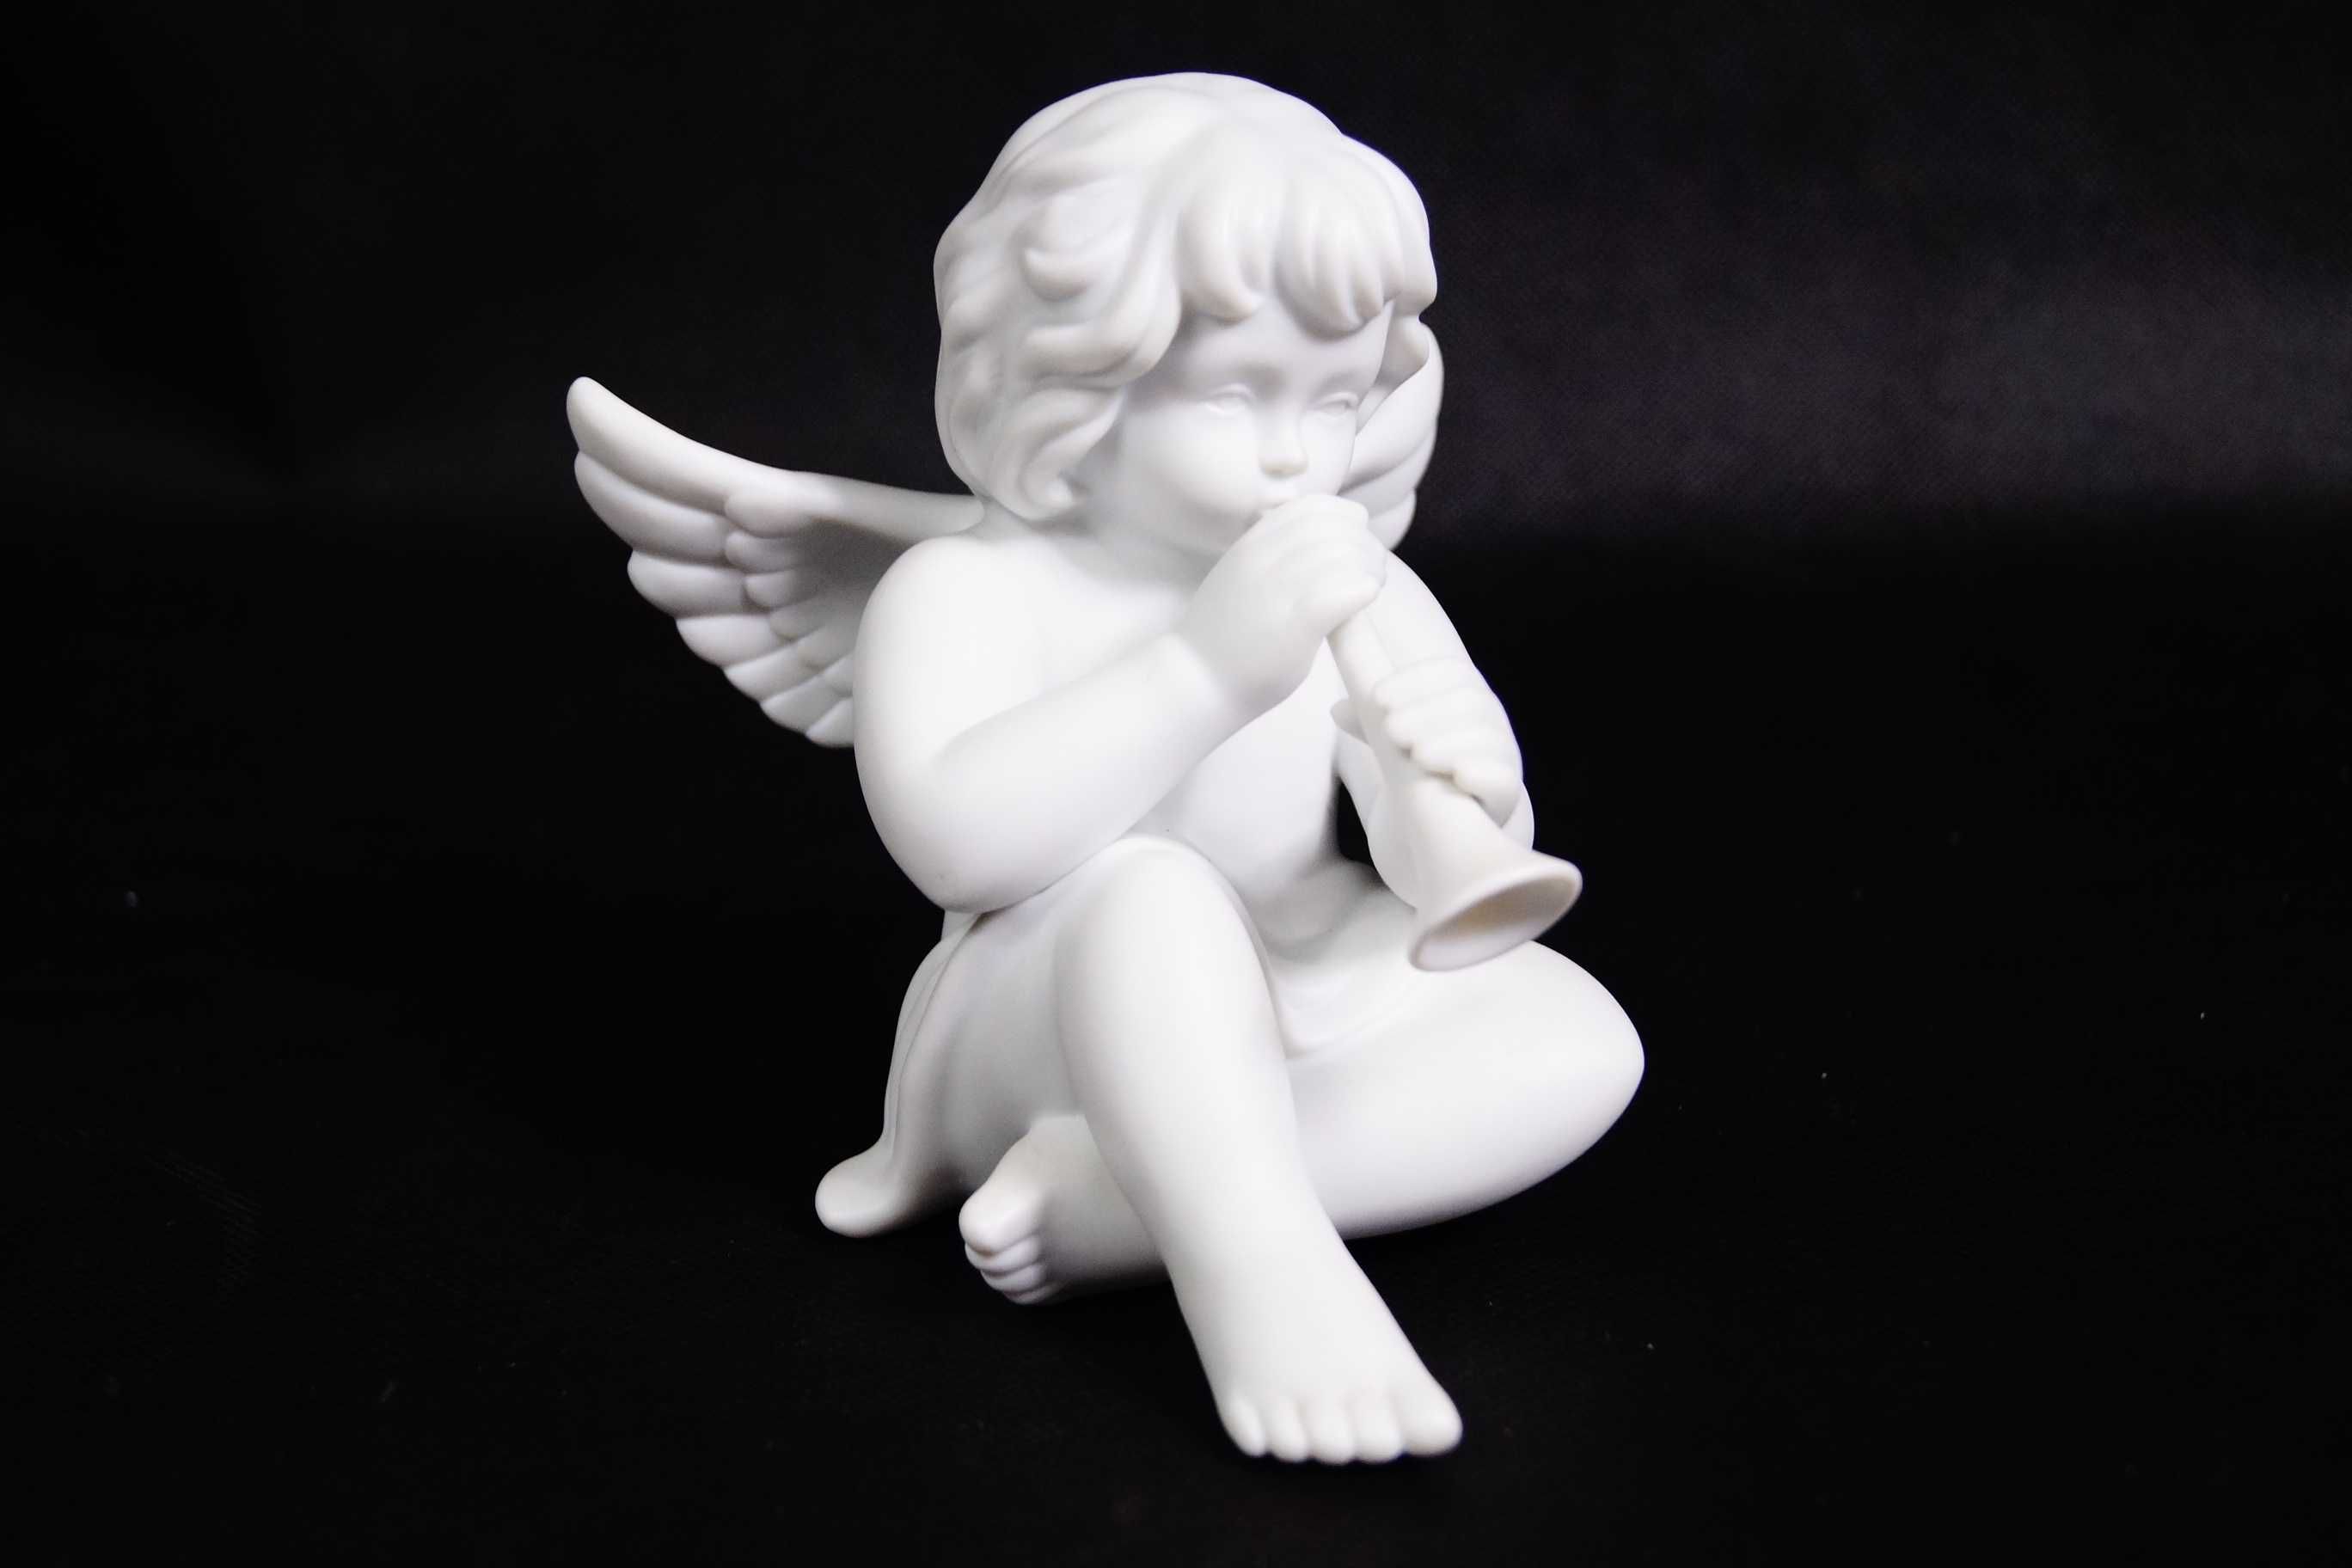 Aniołek figura porcelanowa Rosenthal biskwitowa